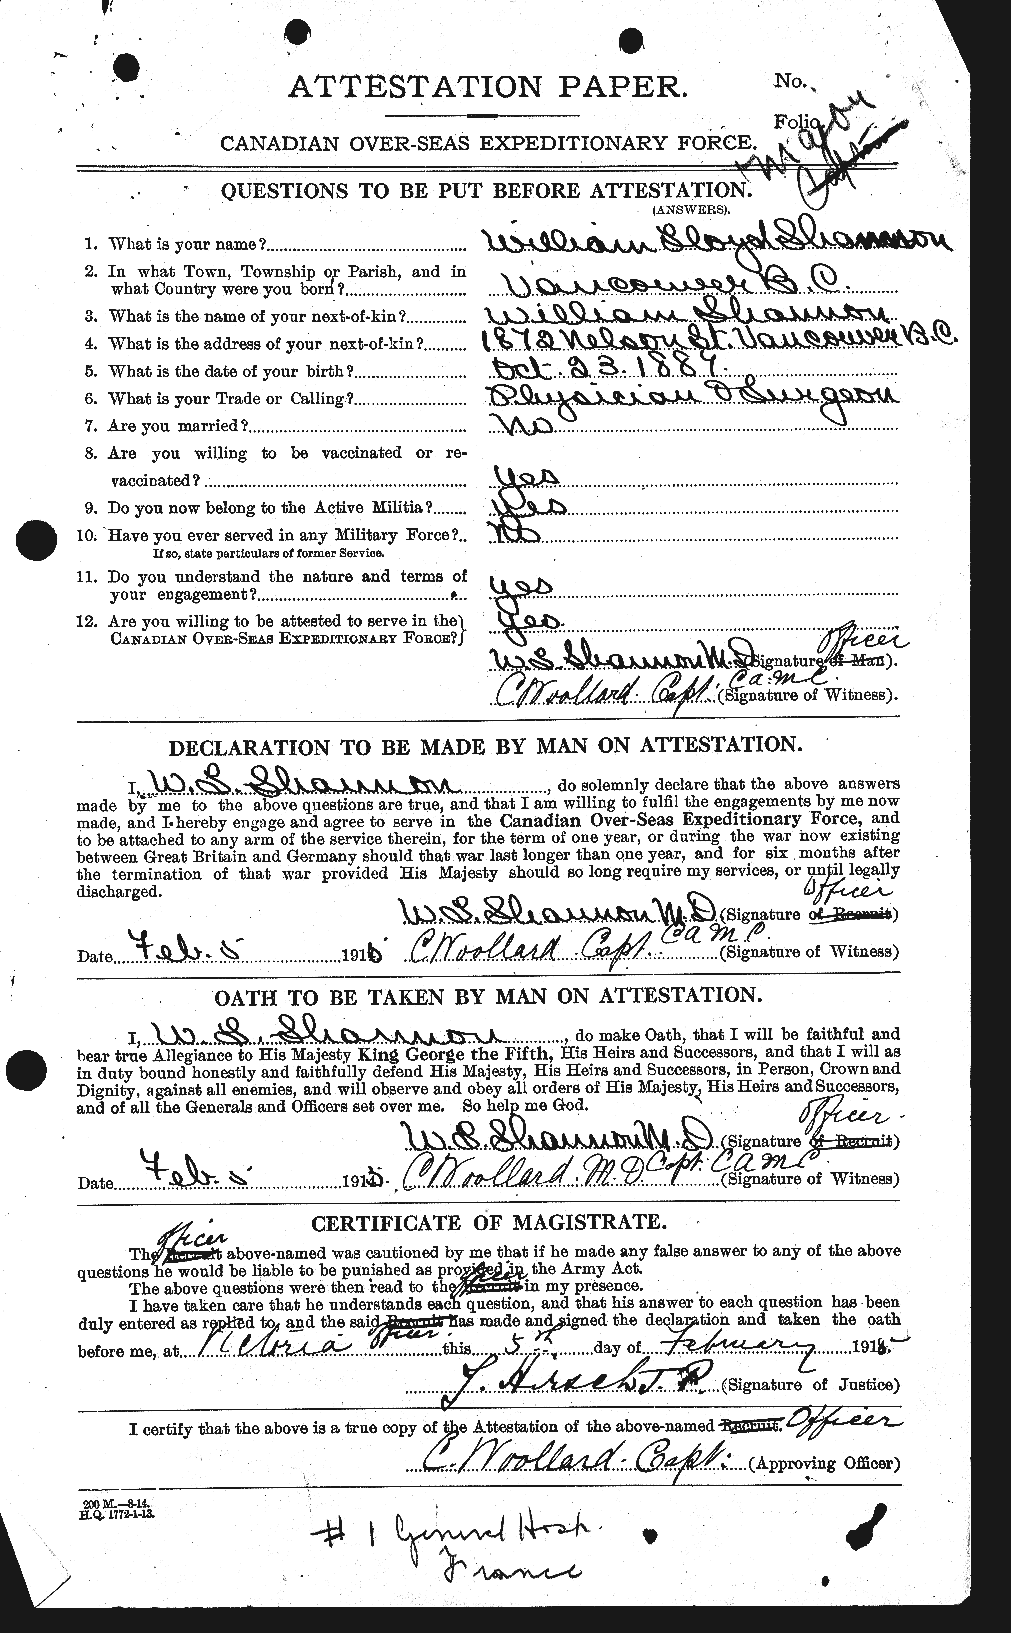 Dossiers du Personnel de la Première Guerre mondiale - CEC 088115a